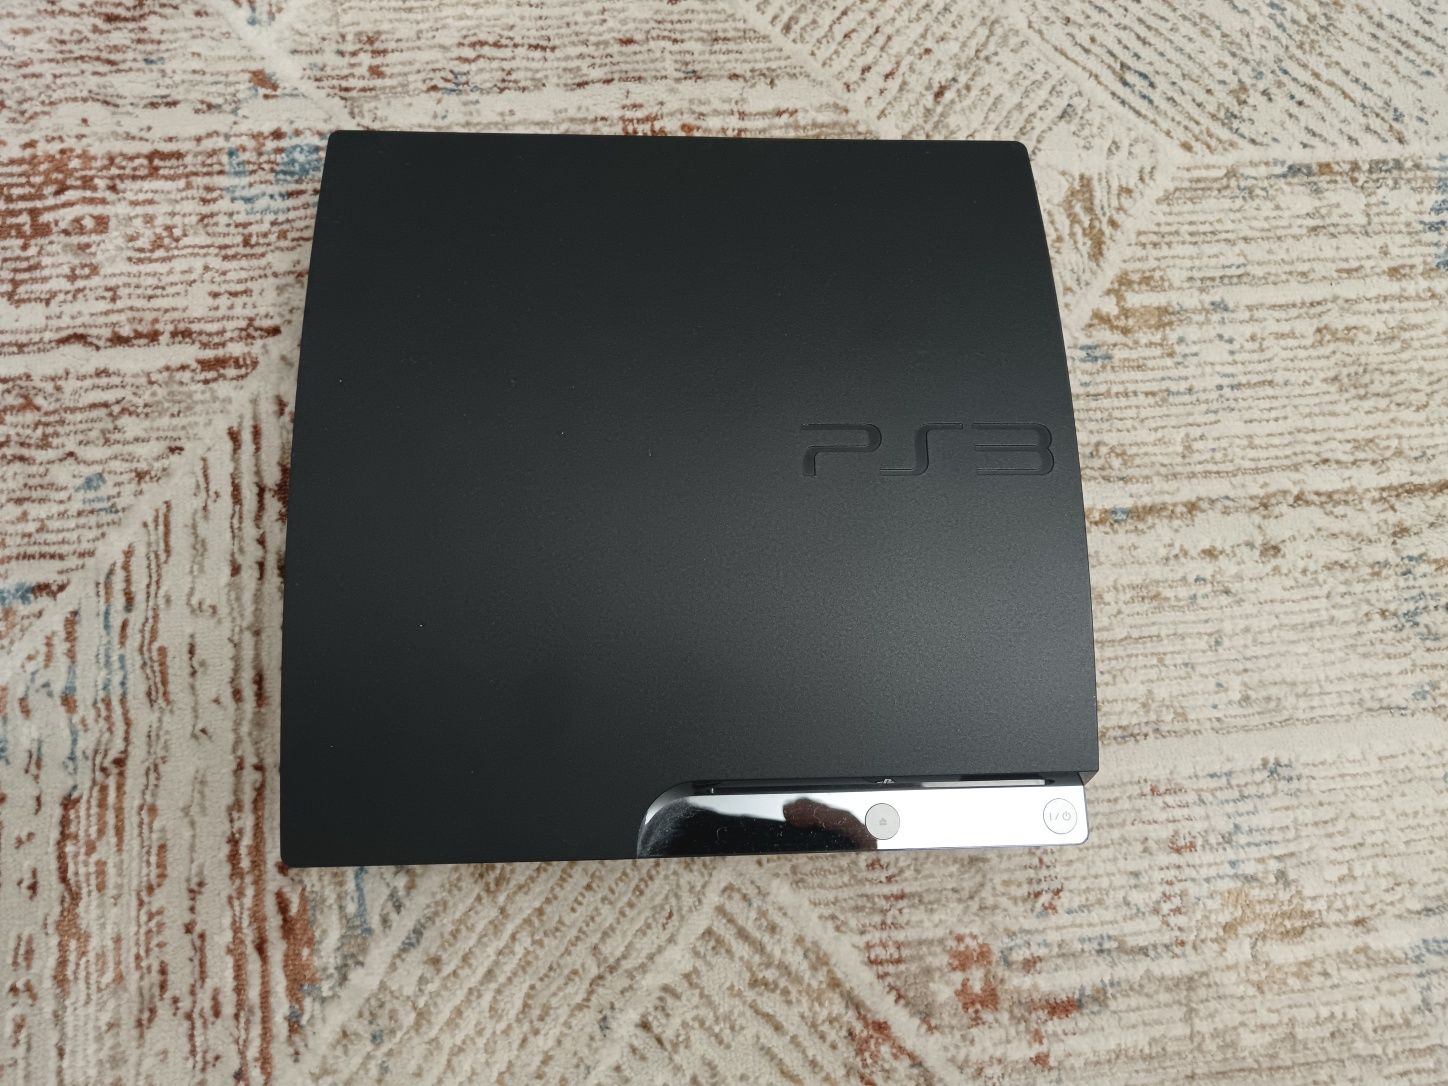 Срочно продам Playstation 3 slim!!!